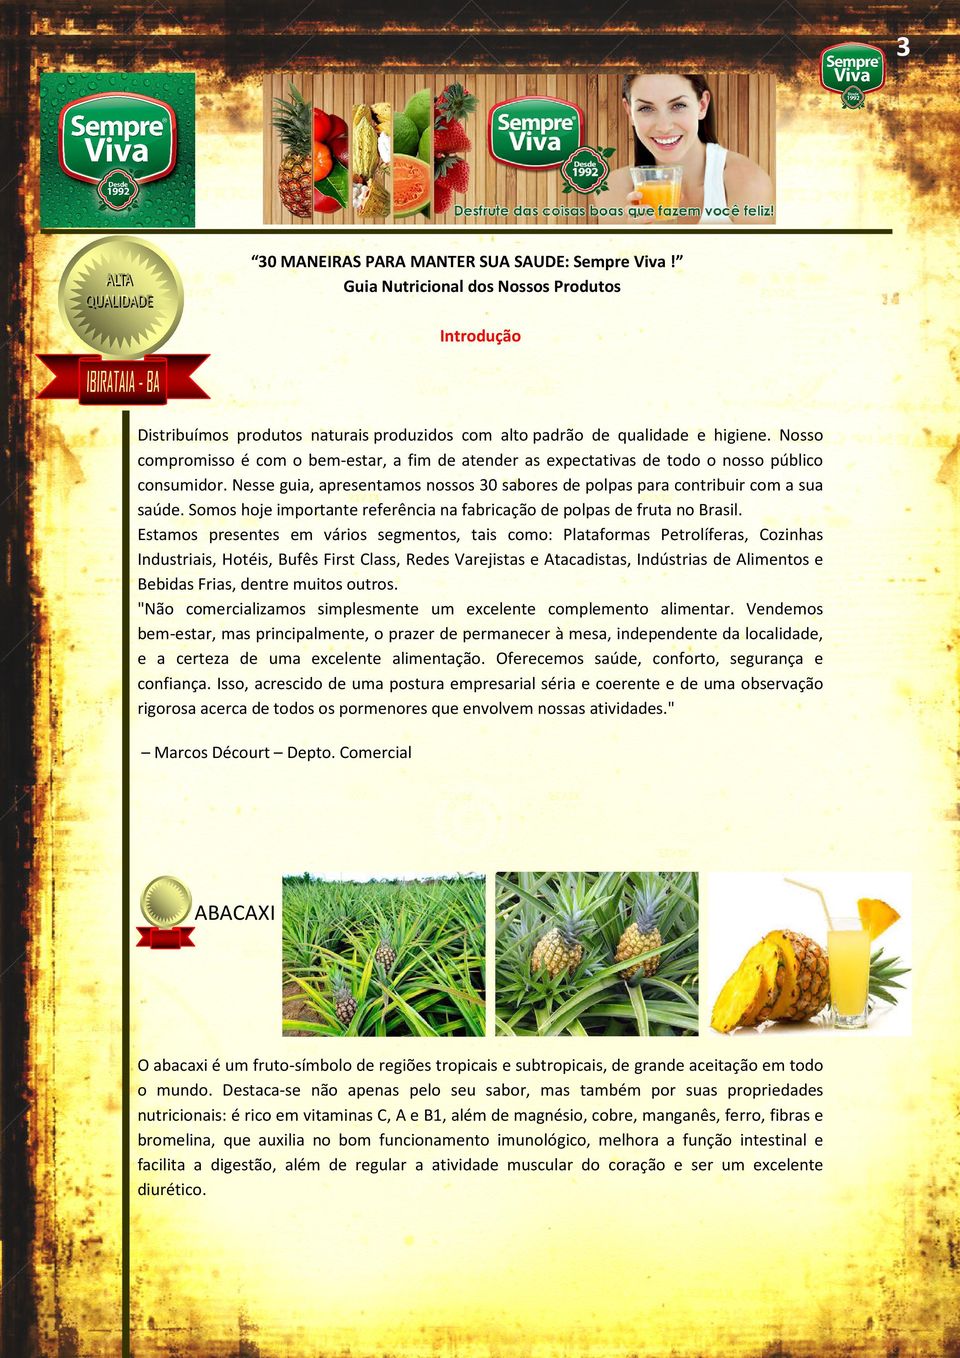 Somos hoje importante referência na fabricação de polpas de fruta no Brasil.